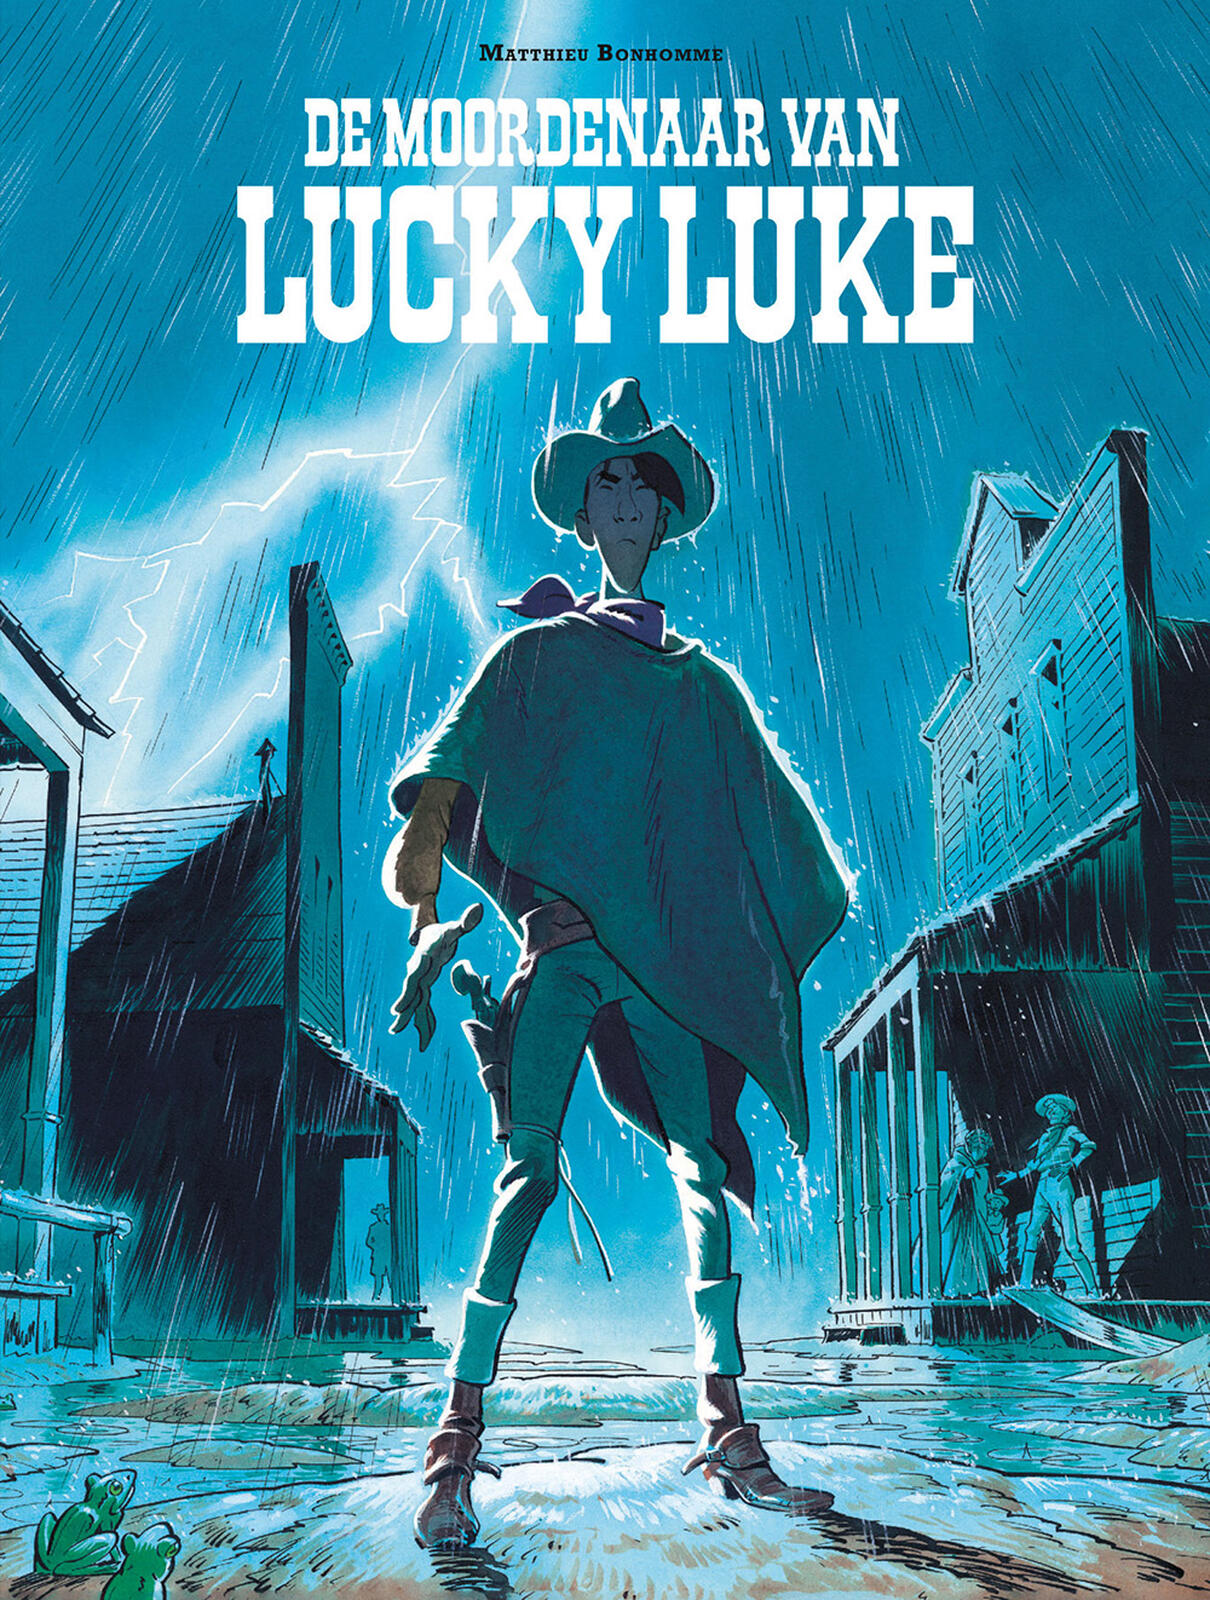 Lucky Luke door 1- Bonhomme: De moordenaar van Lucky Luke